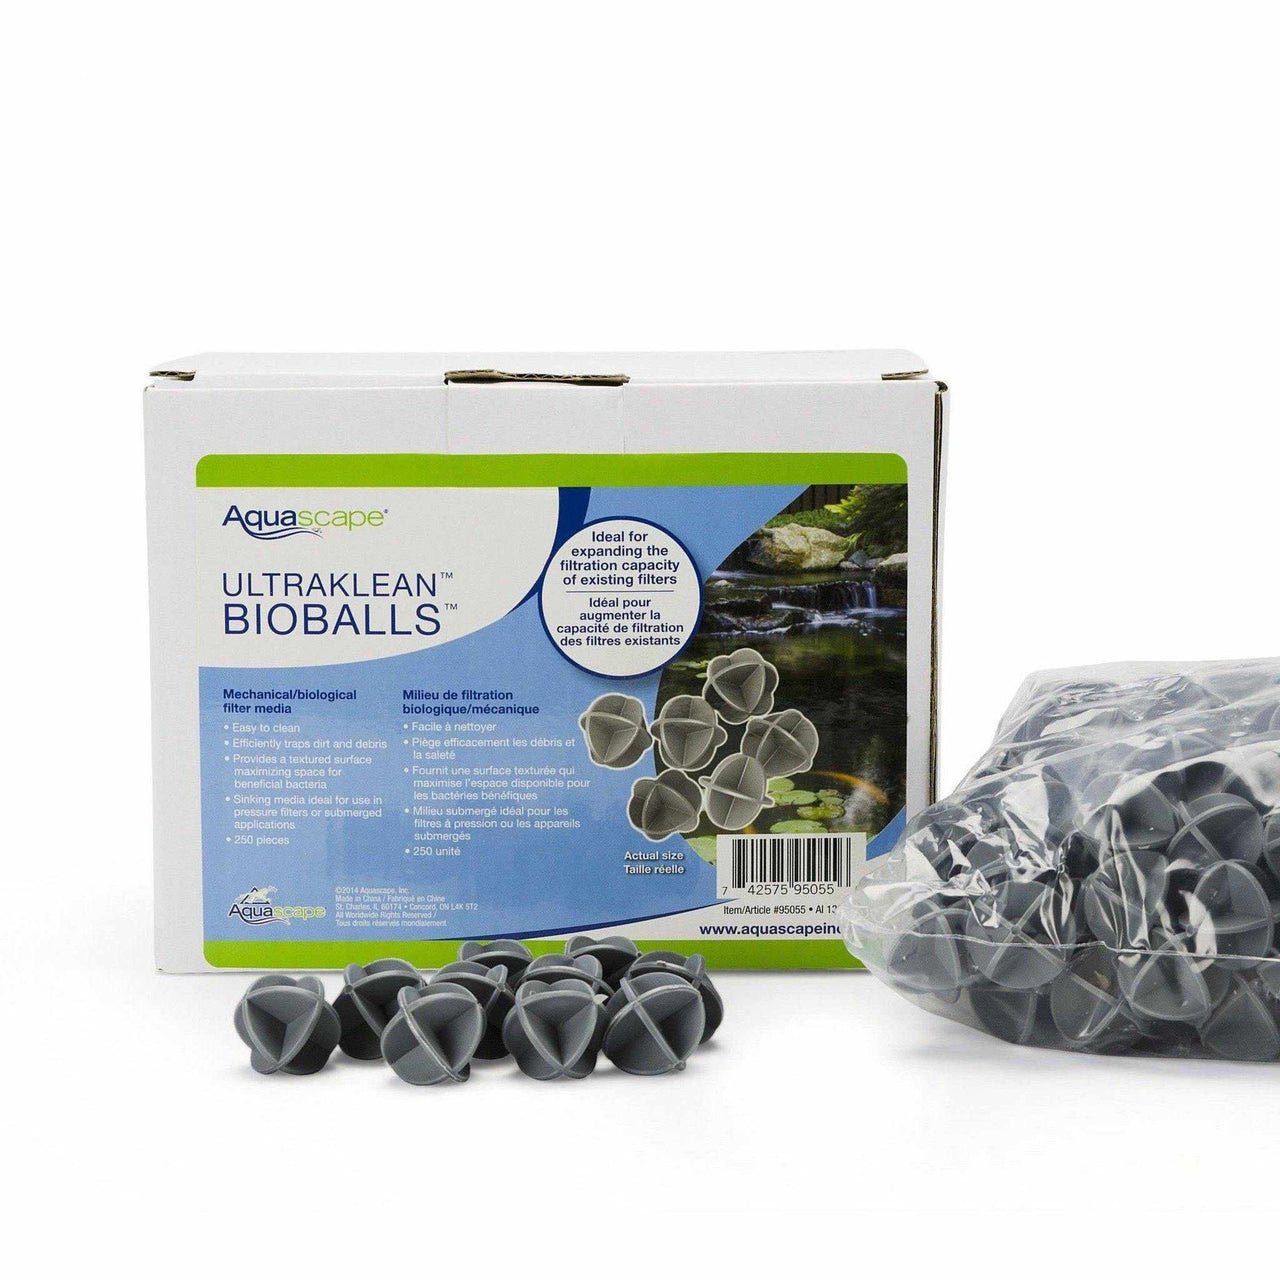 Aquascape UltraKlean BioBalls - 250 pcs.